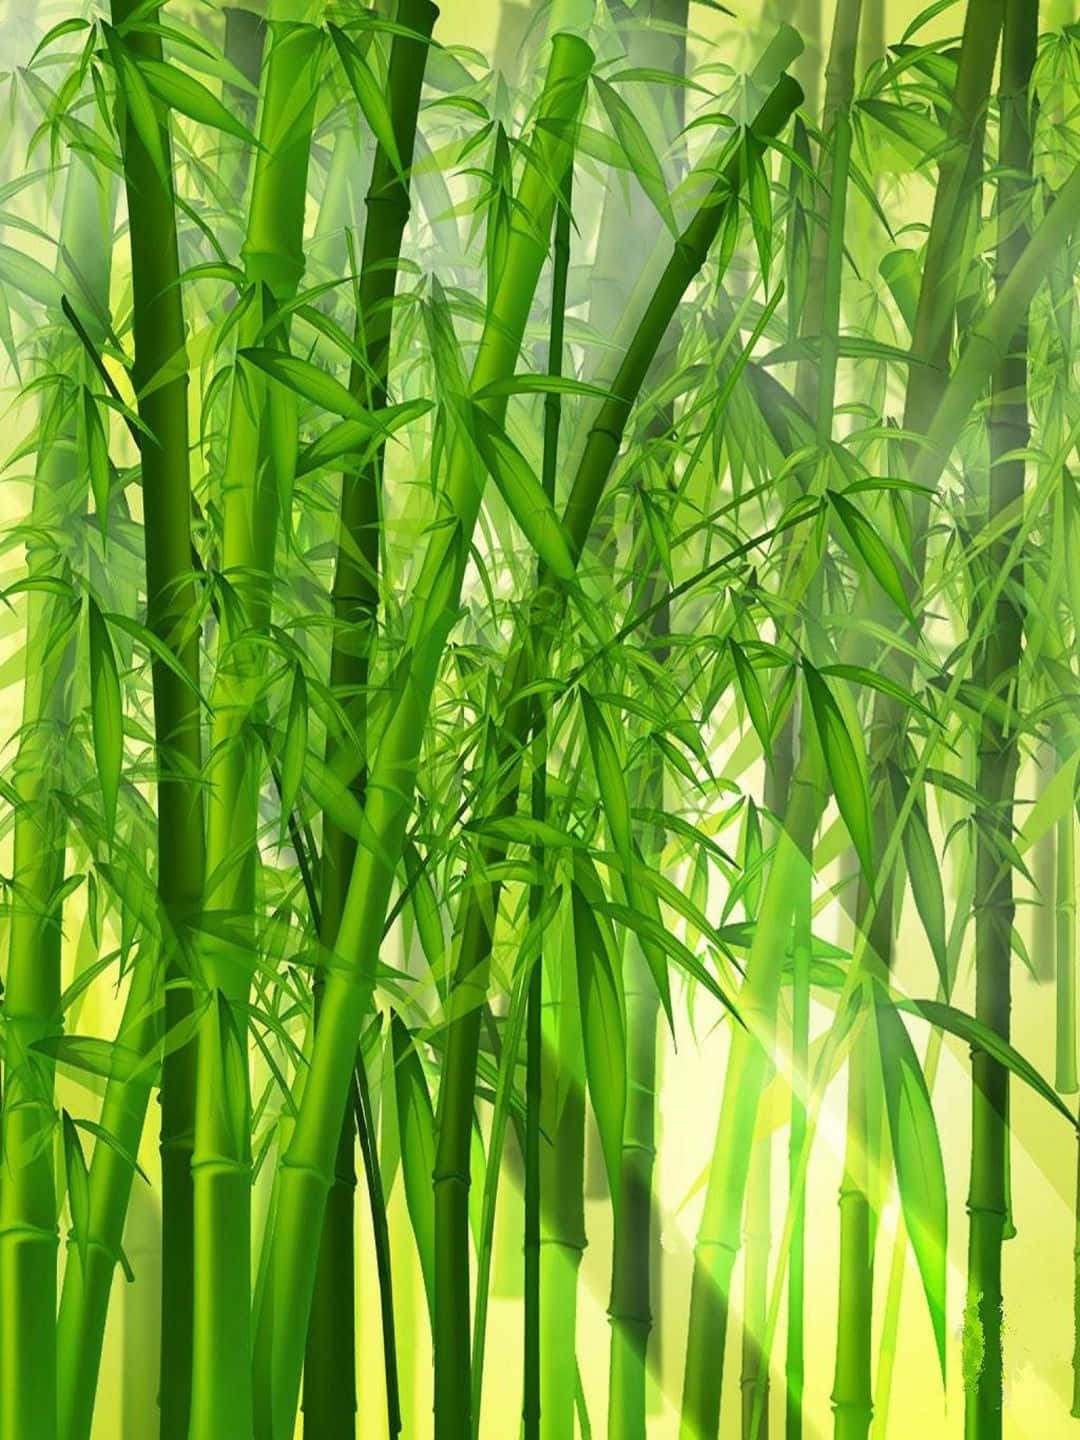 1440pbambushintergrund: Gemälde Von Bambusbäumen